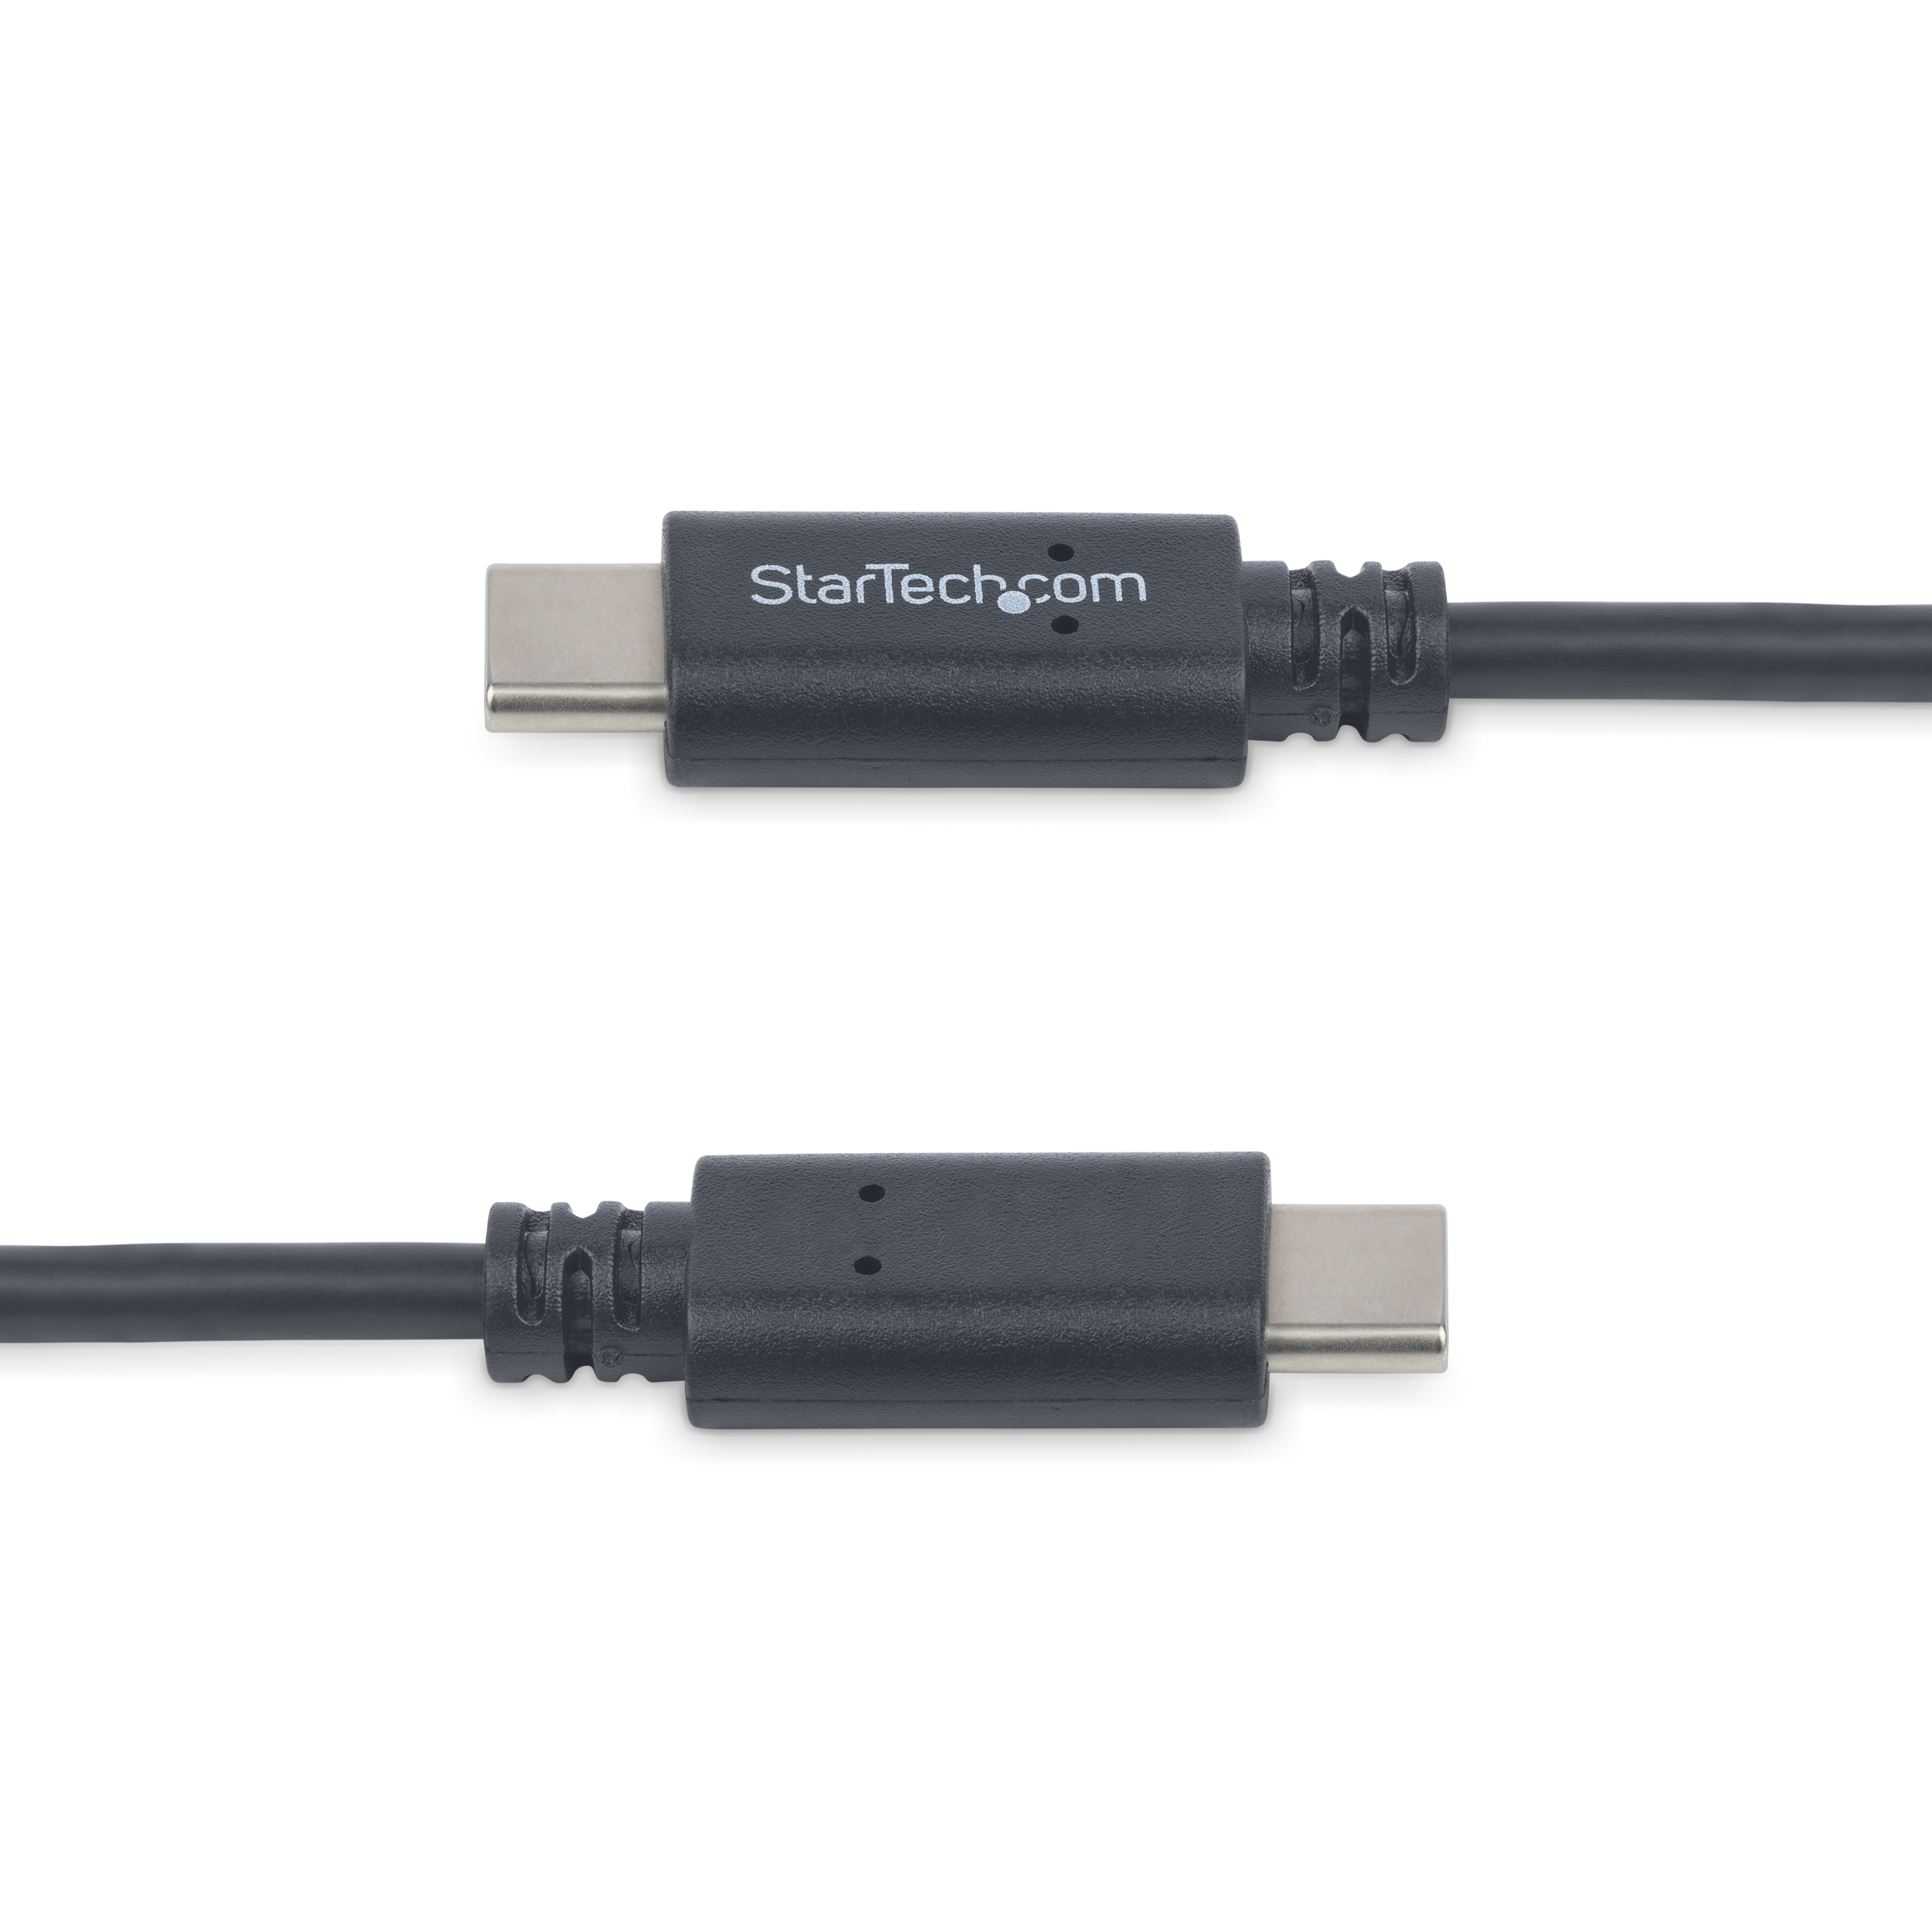 StarTech.com Cavo USB 2.0 per stampante tipo A/B ad alta velocita